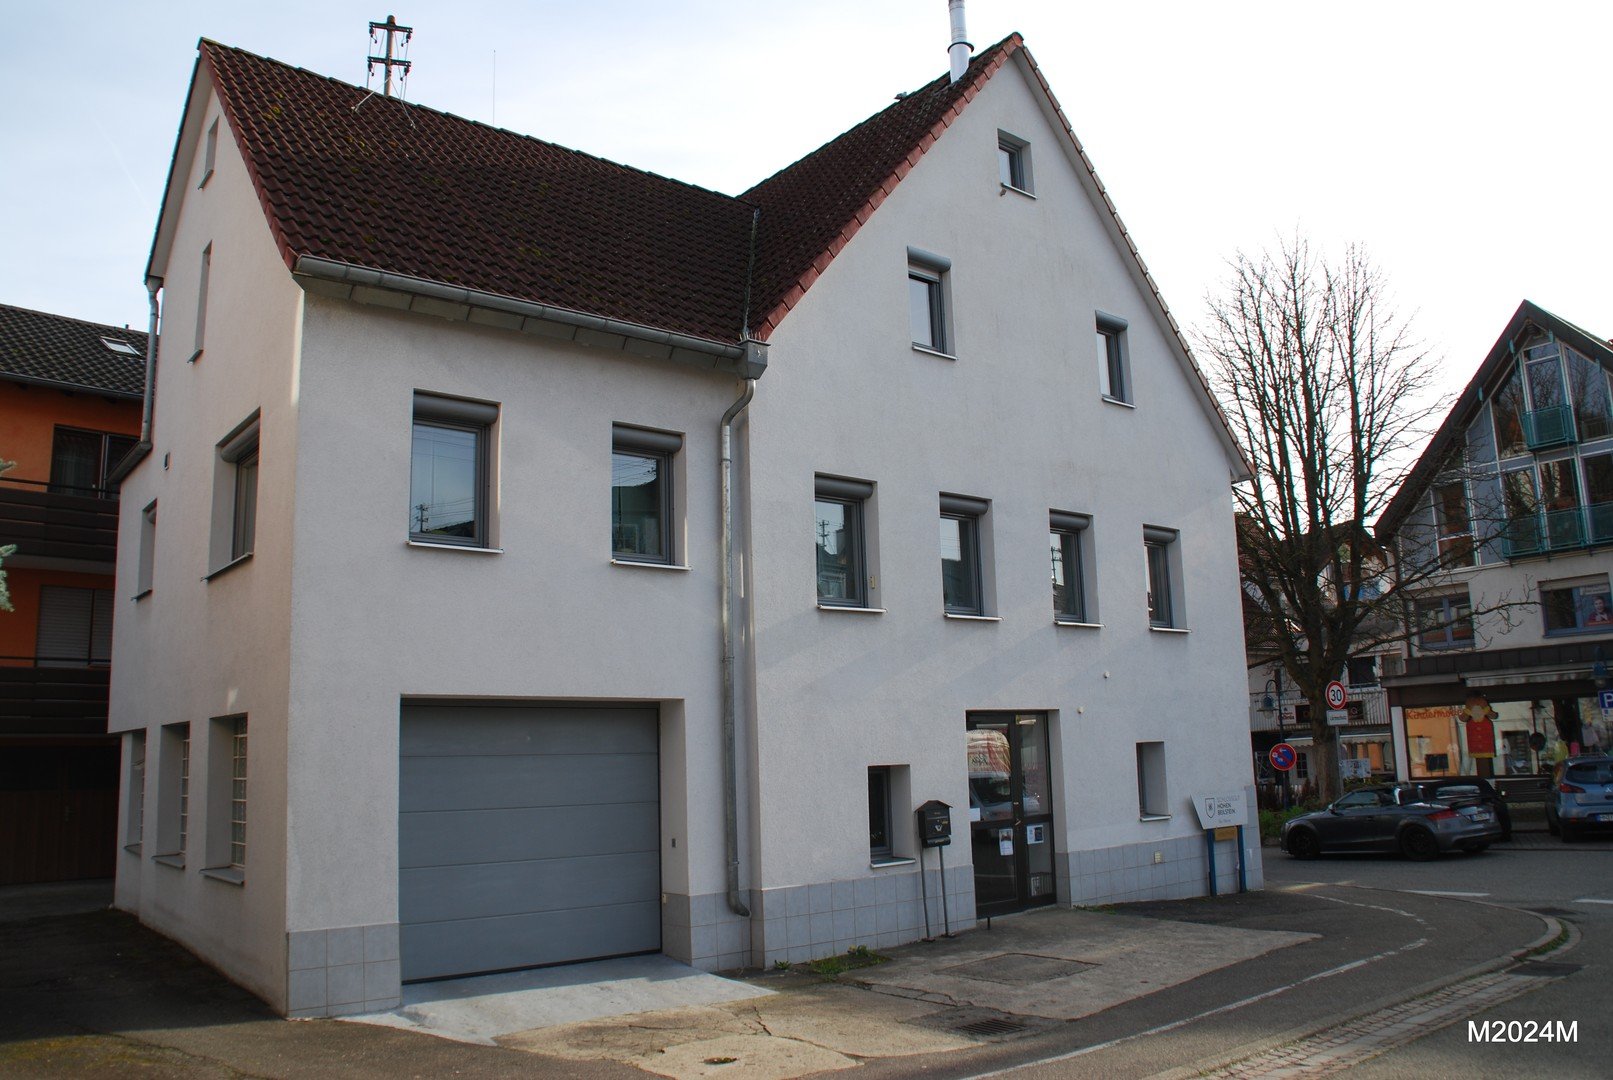 Wohnhaus mit Laden/Büro in 71717 Beilstein